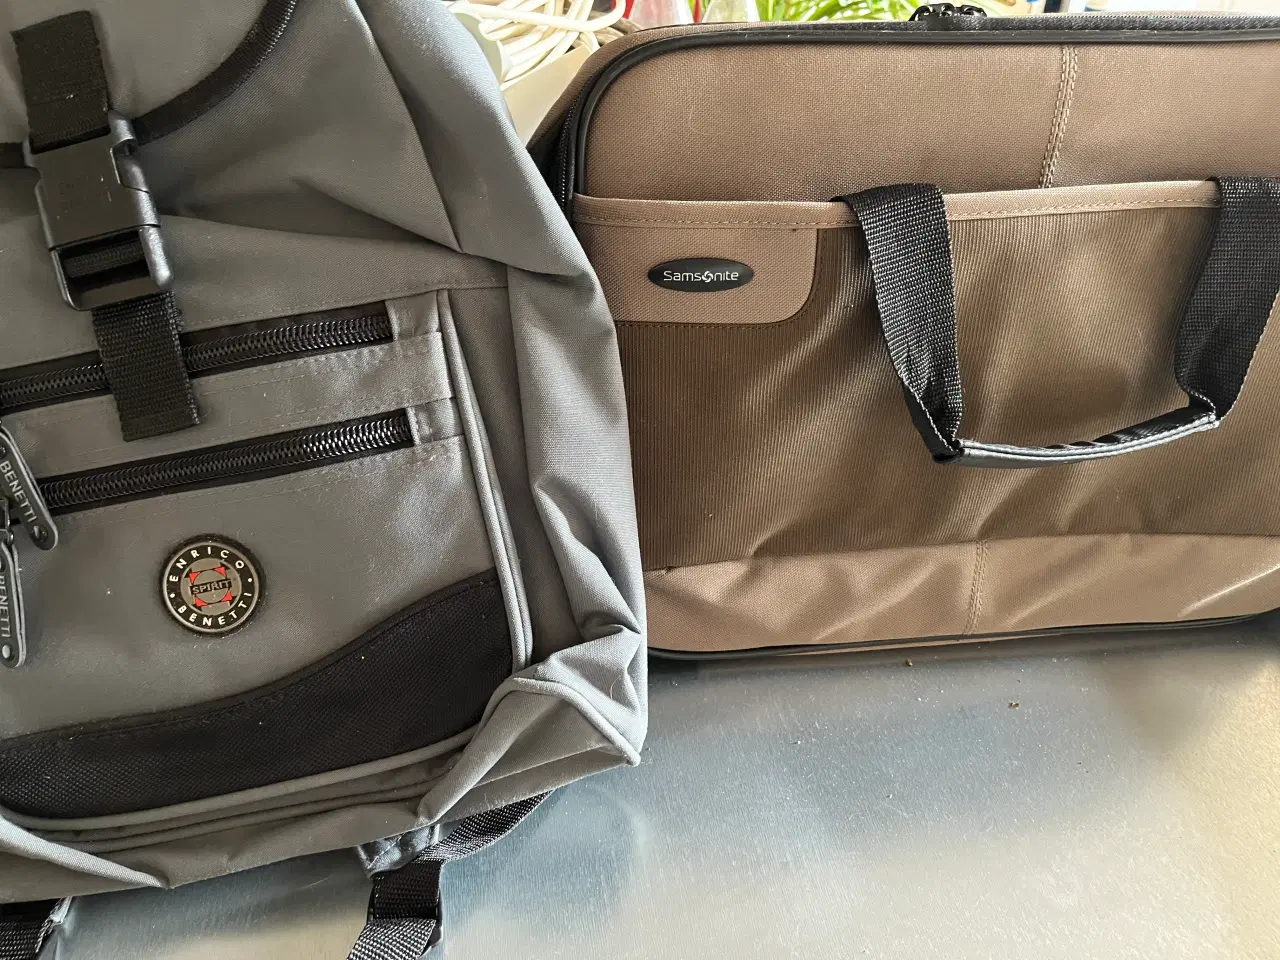 Billede 2 - Diverse pc tasker og pc ryk sække 